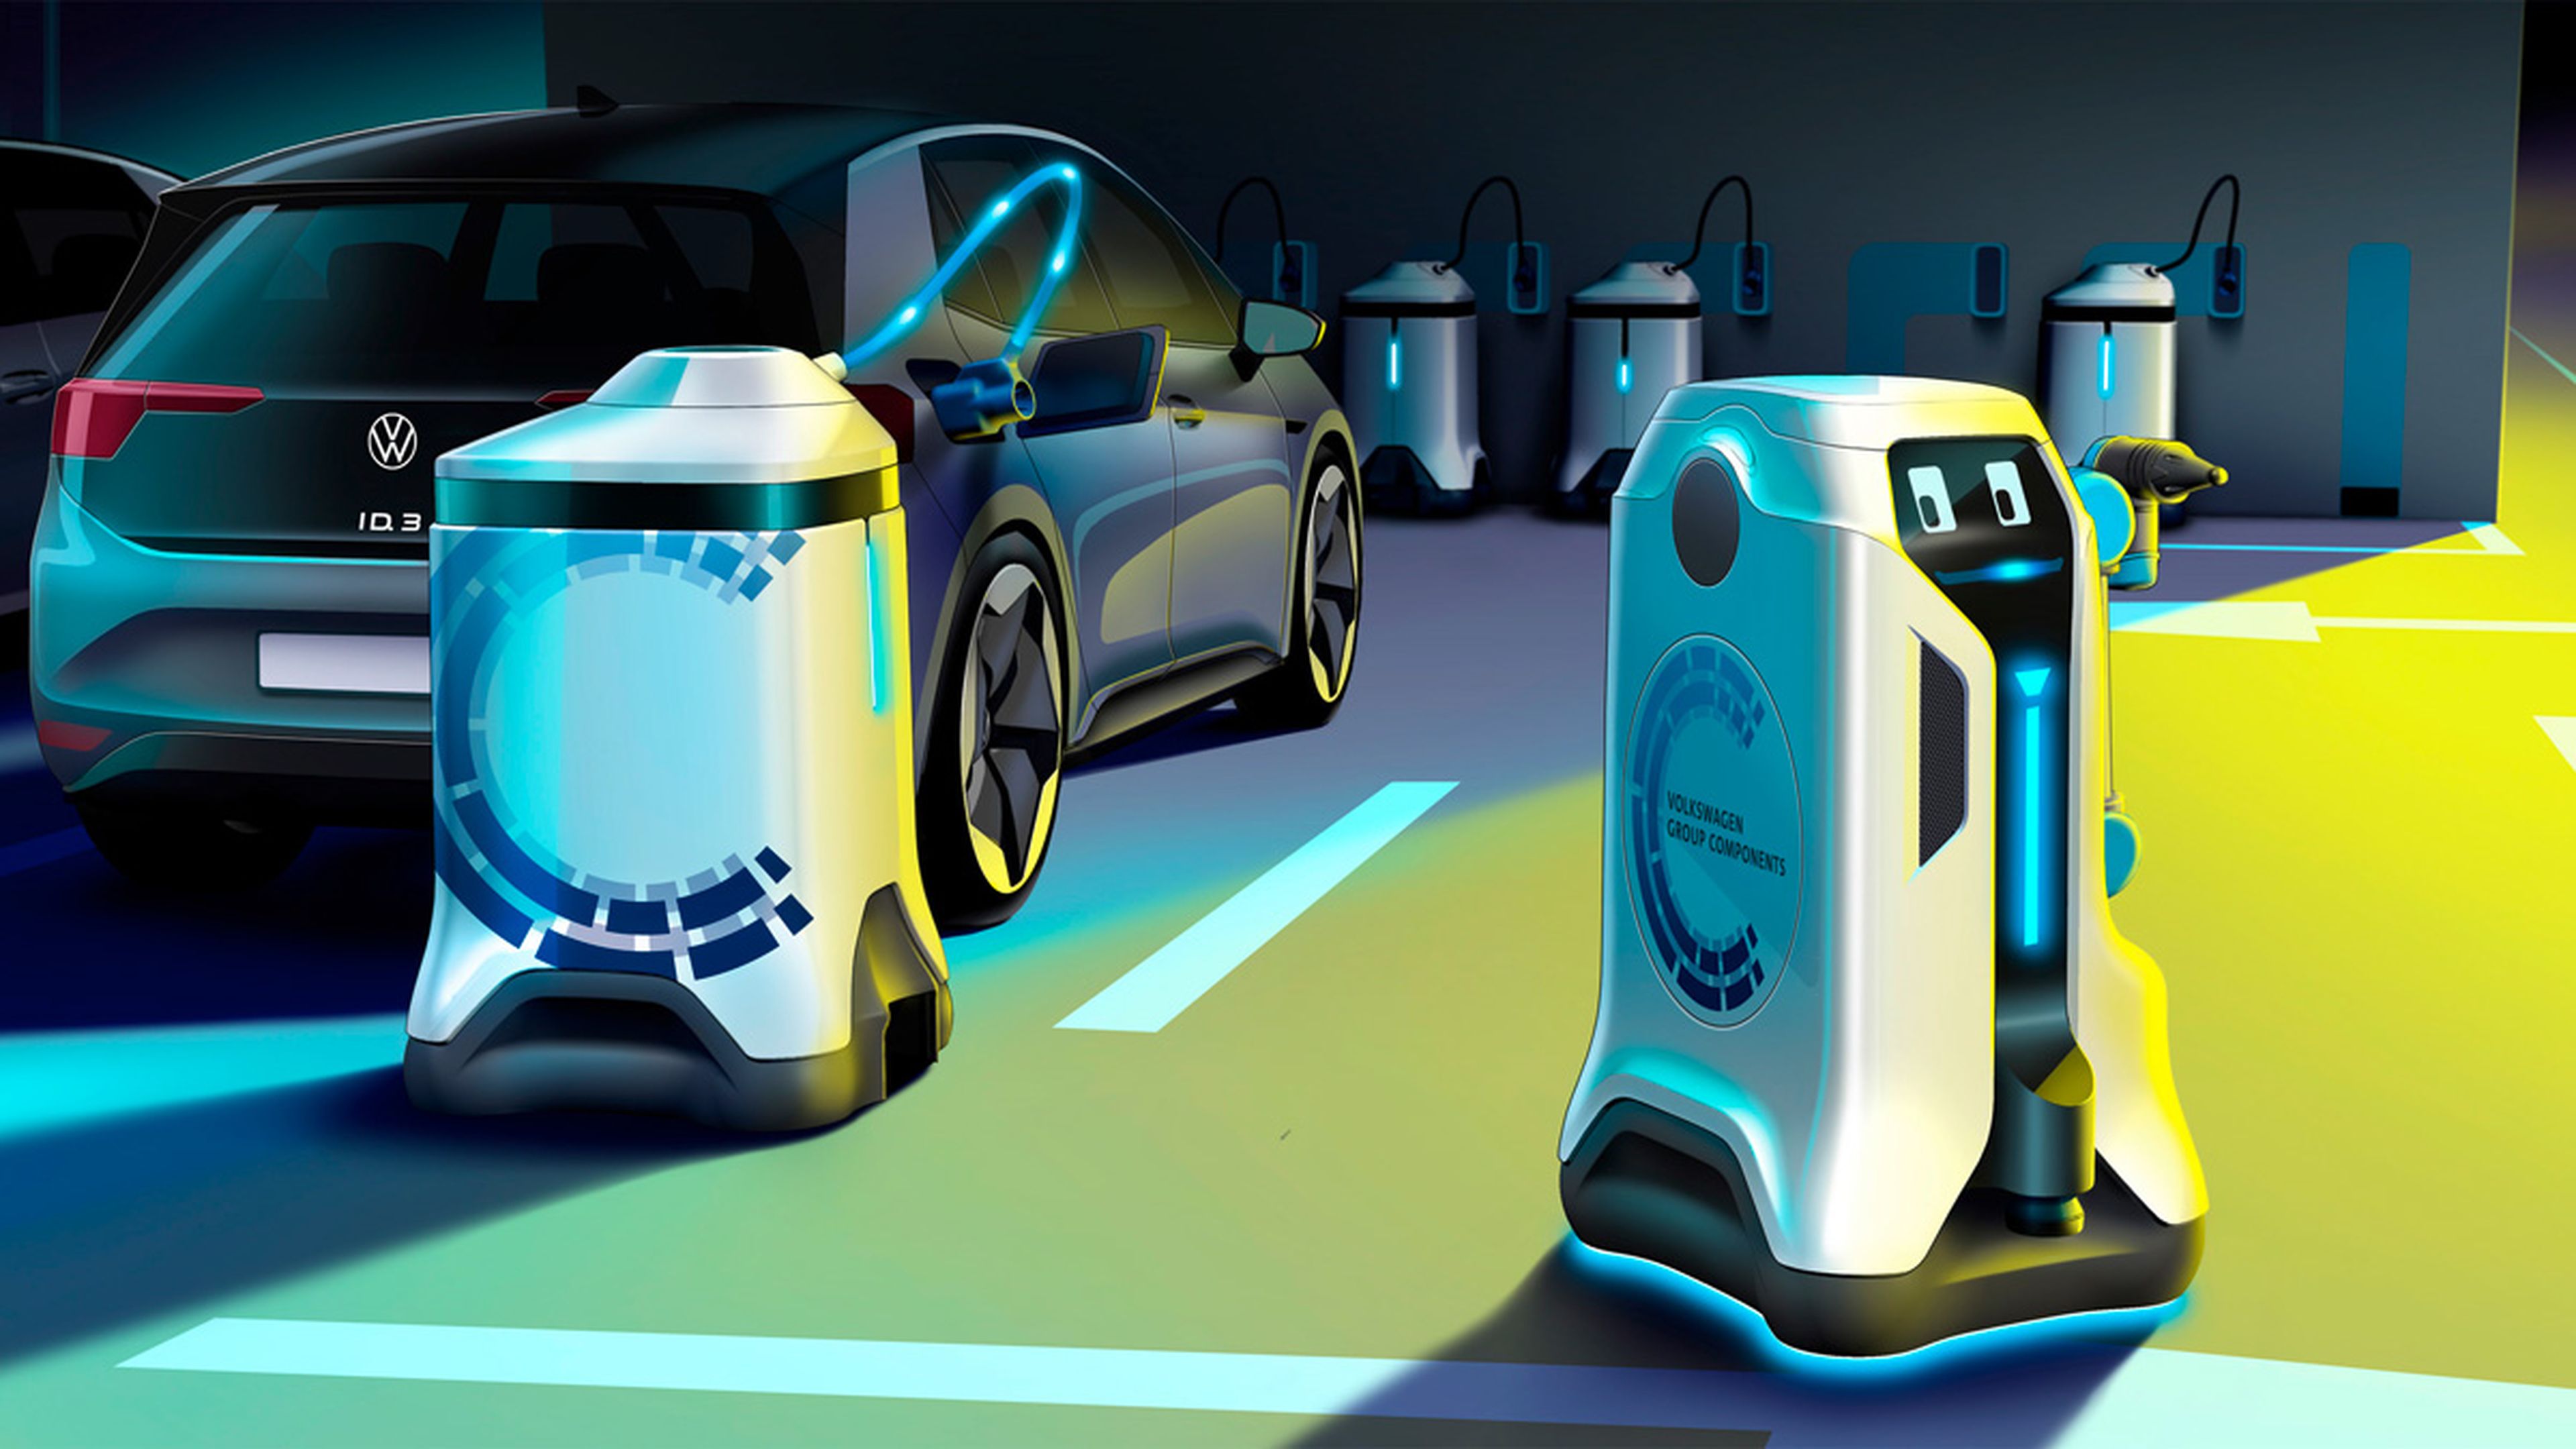 Robot Volkswagen carga coches electricos